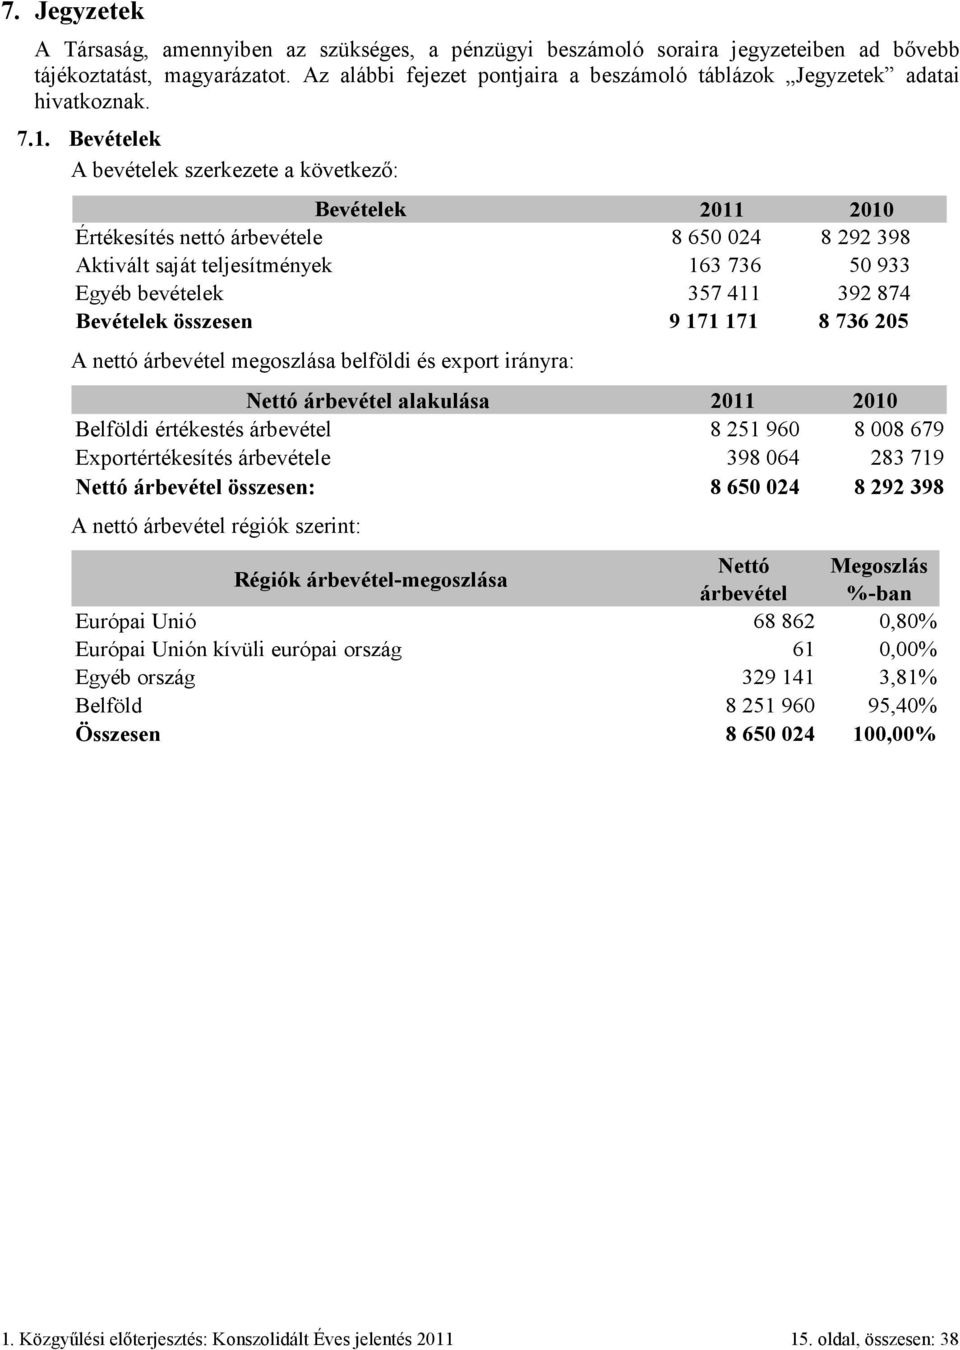 Bevételek A bevételek szerkezete a következő: Bevételek 2011 2010 Értékesítés nettó árbevétele 8 650 024 8 292 398 Aktivált saját teljesítmények 163 736 50 933 Egyéb bevételek 357 411 392 874